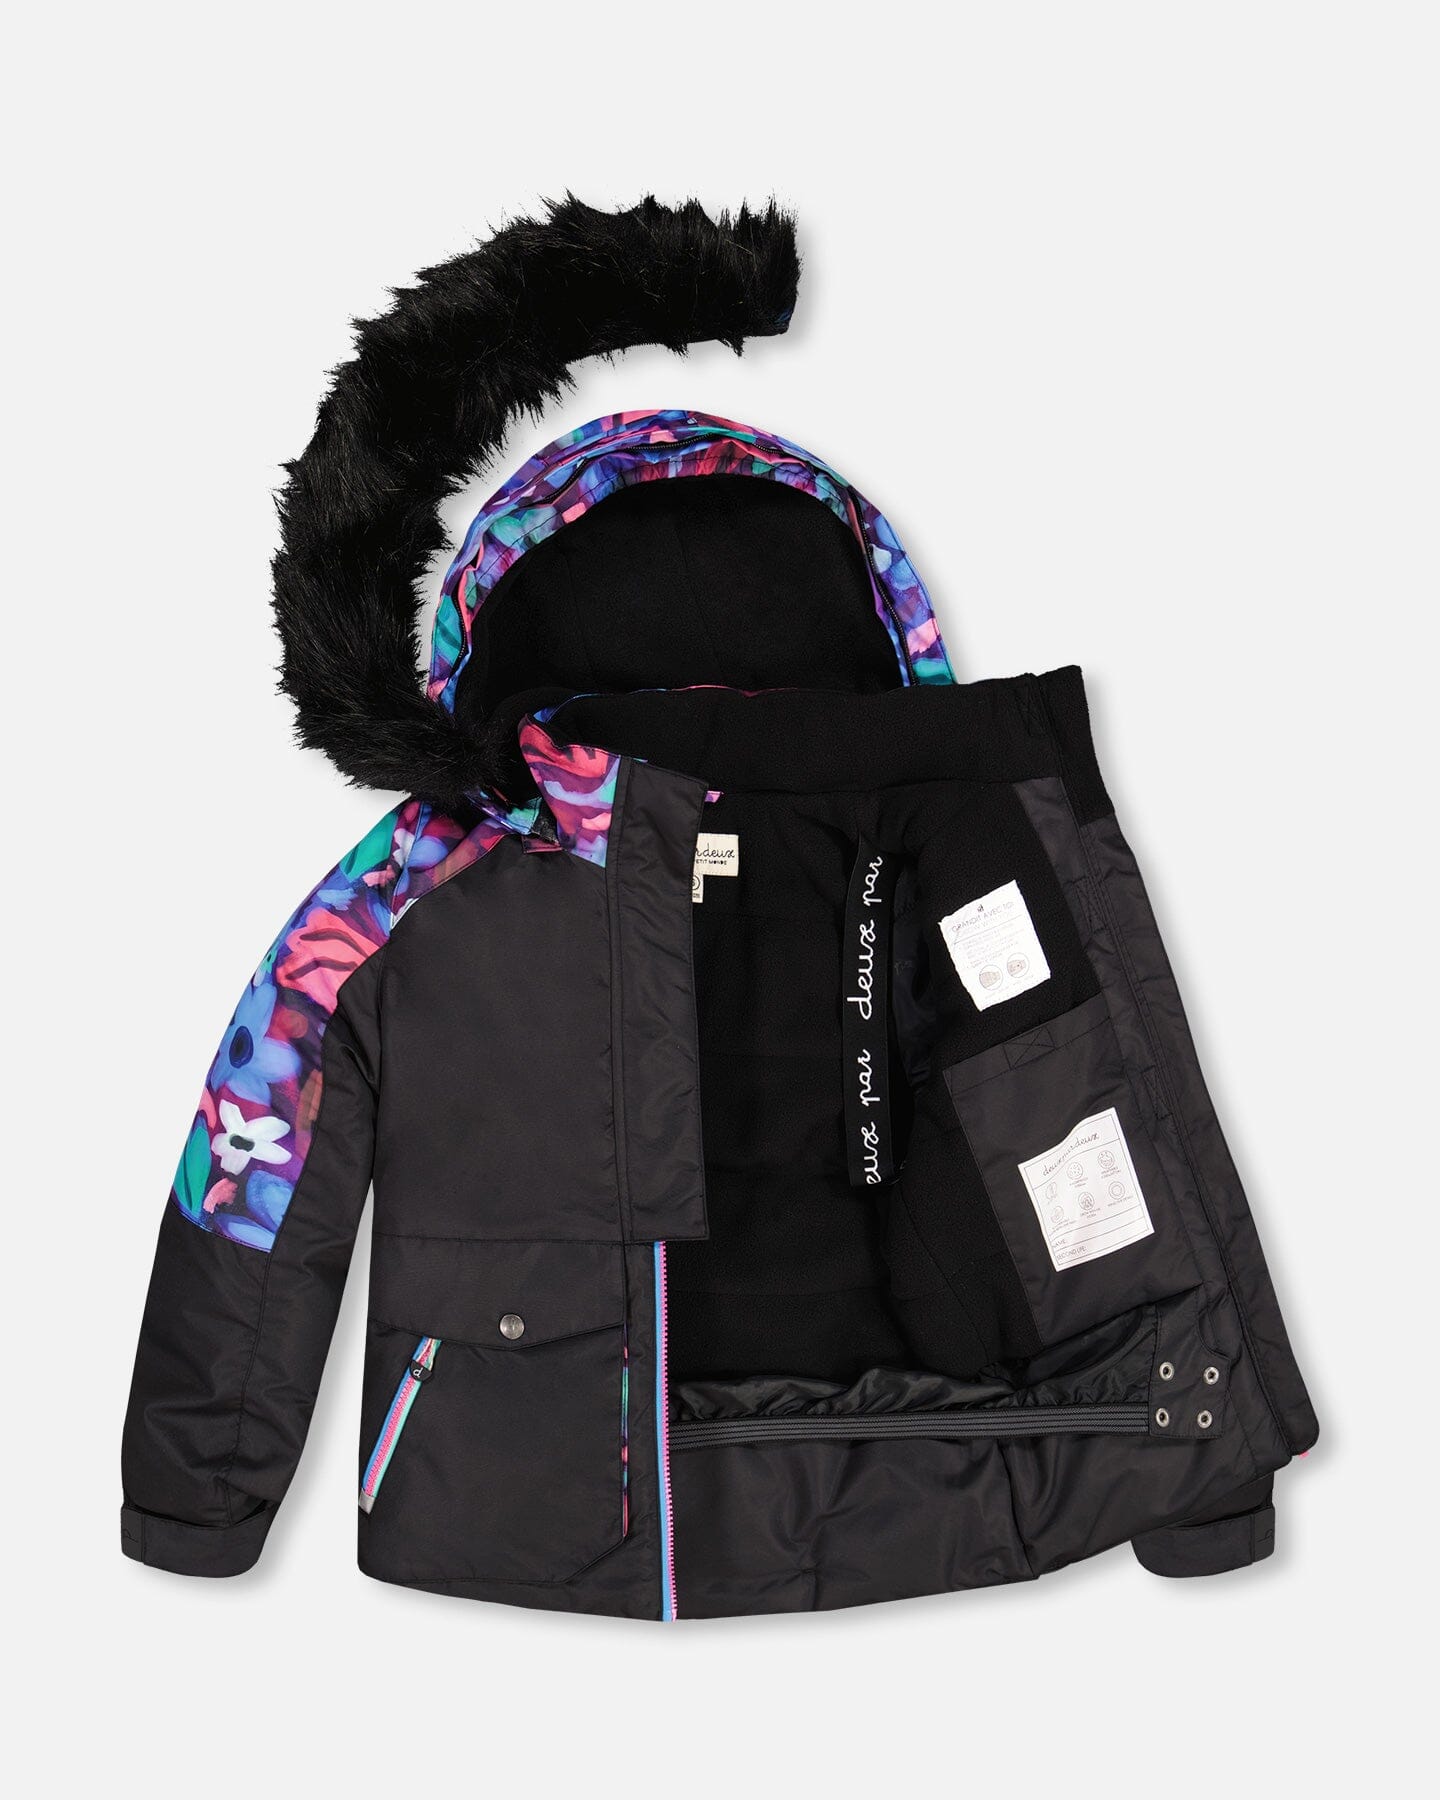 Two Piece Snowsuit Black With Frosted Rainbow Print - Deux par Deux